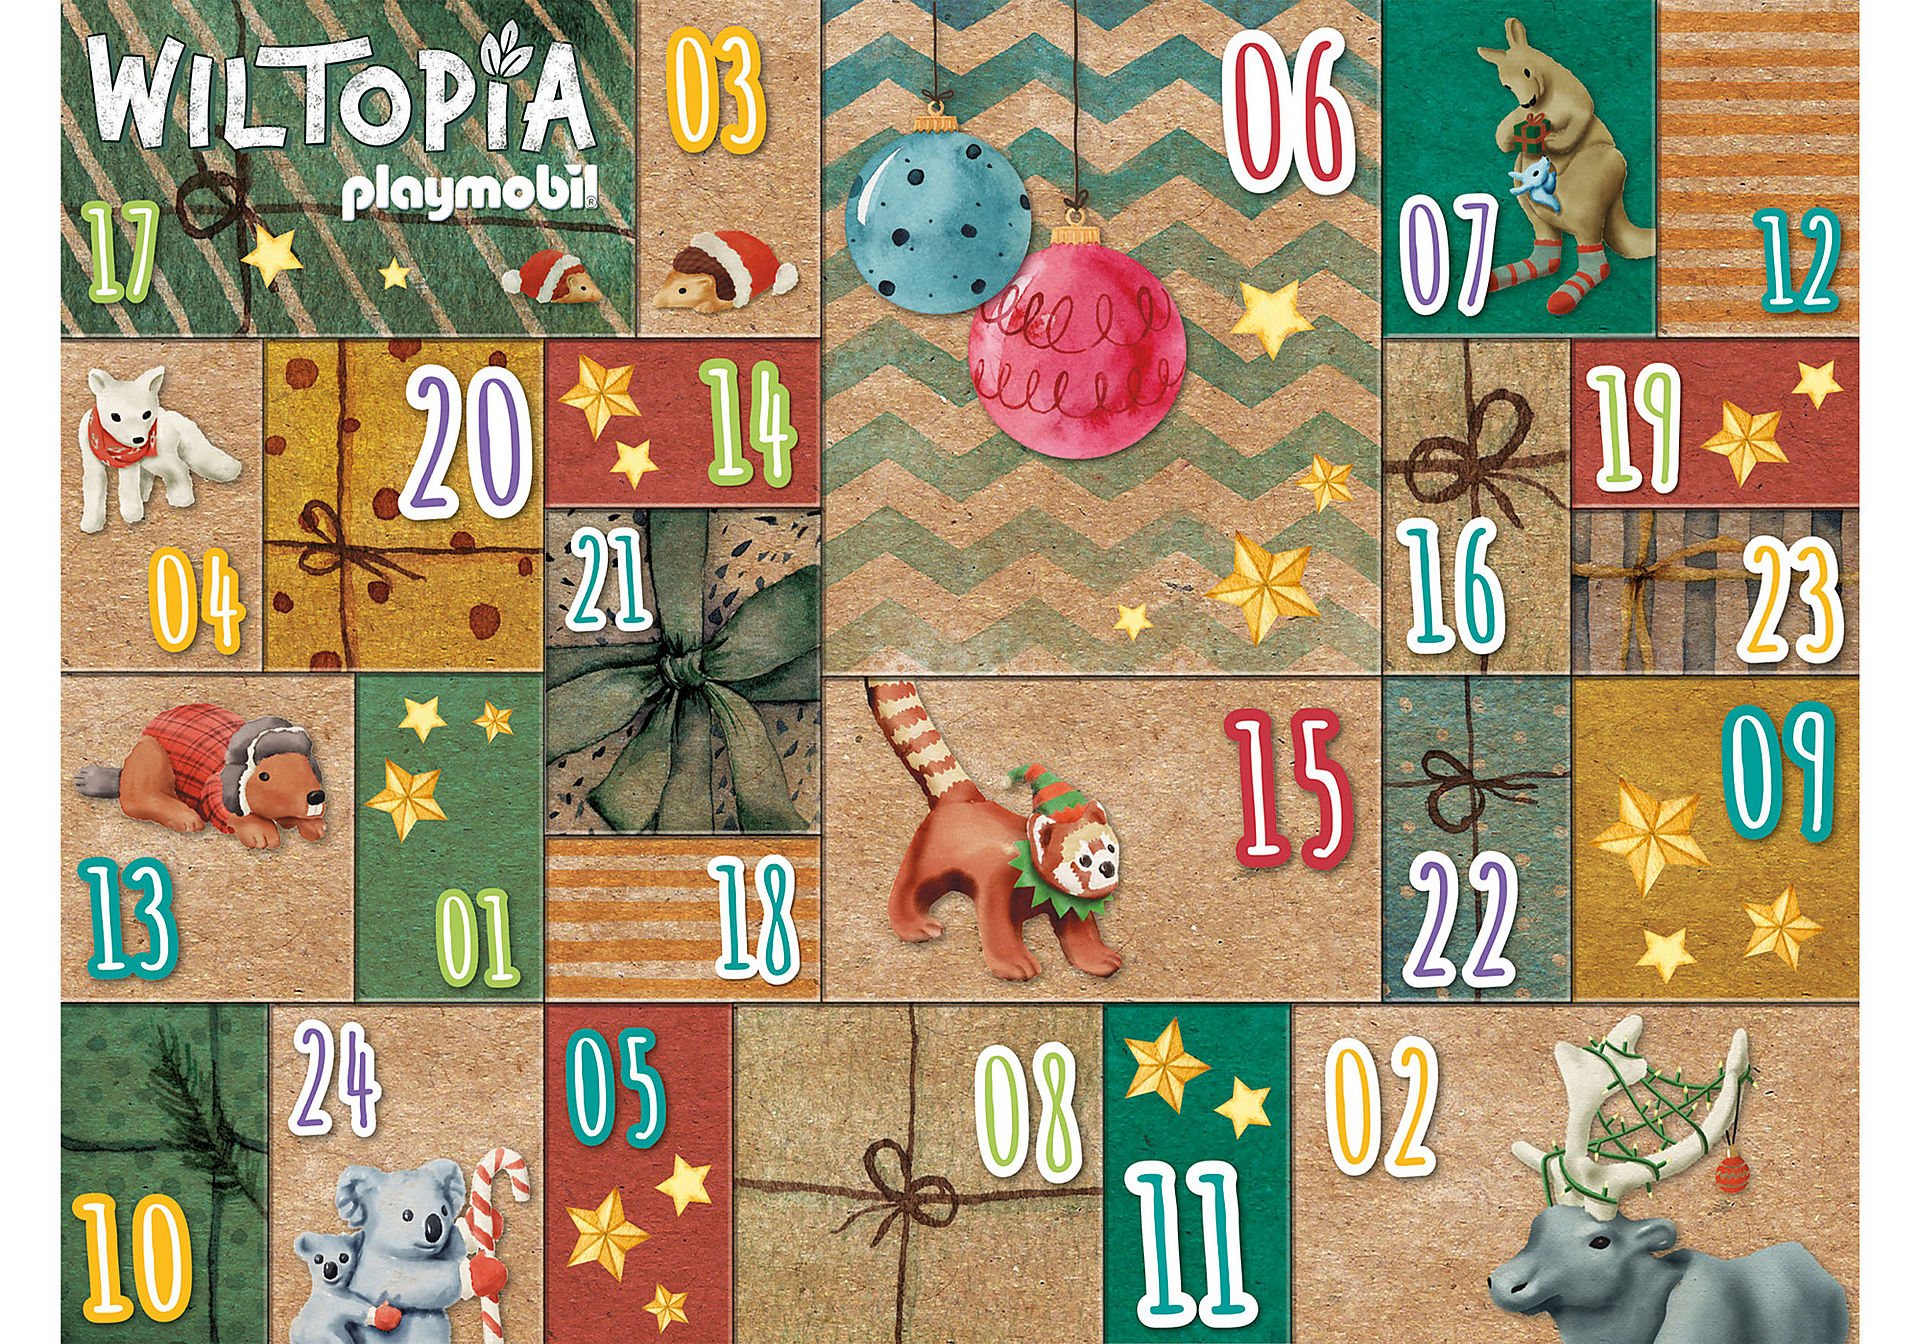 71006 Wiltopia - Calendario dell'Avvento Fai da te - Viaggio degli animali intorno al mondo zoom image3